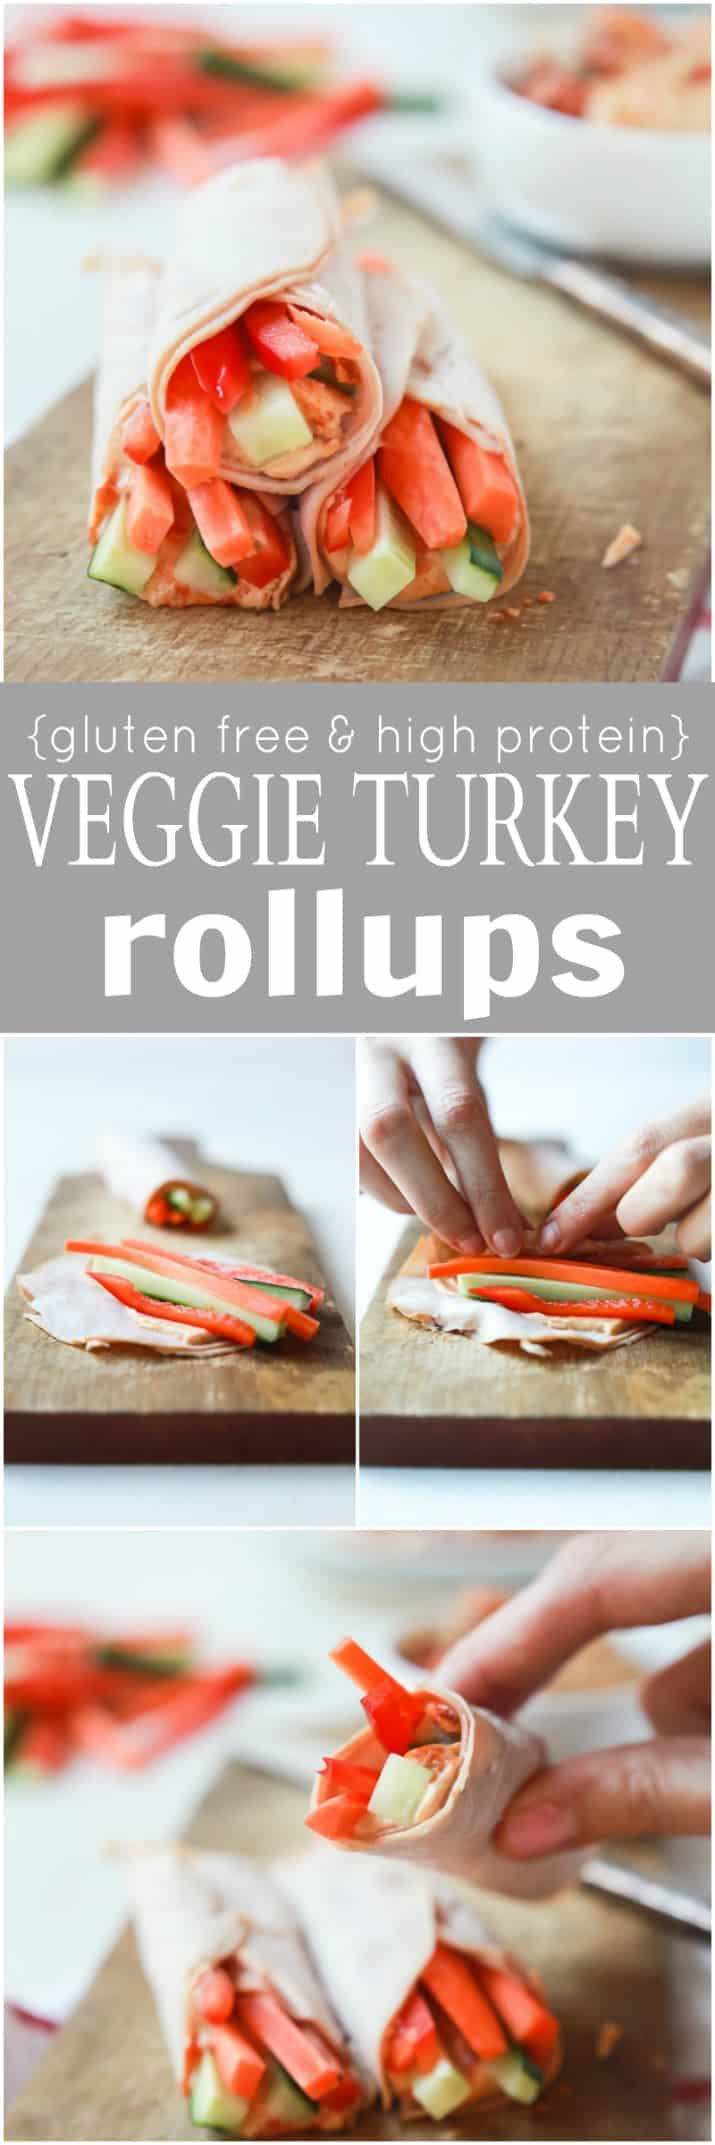 Recipe collage for Veggie Turkey Rollups